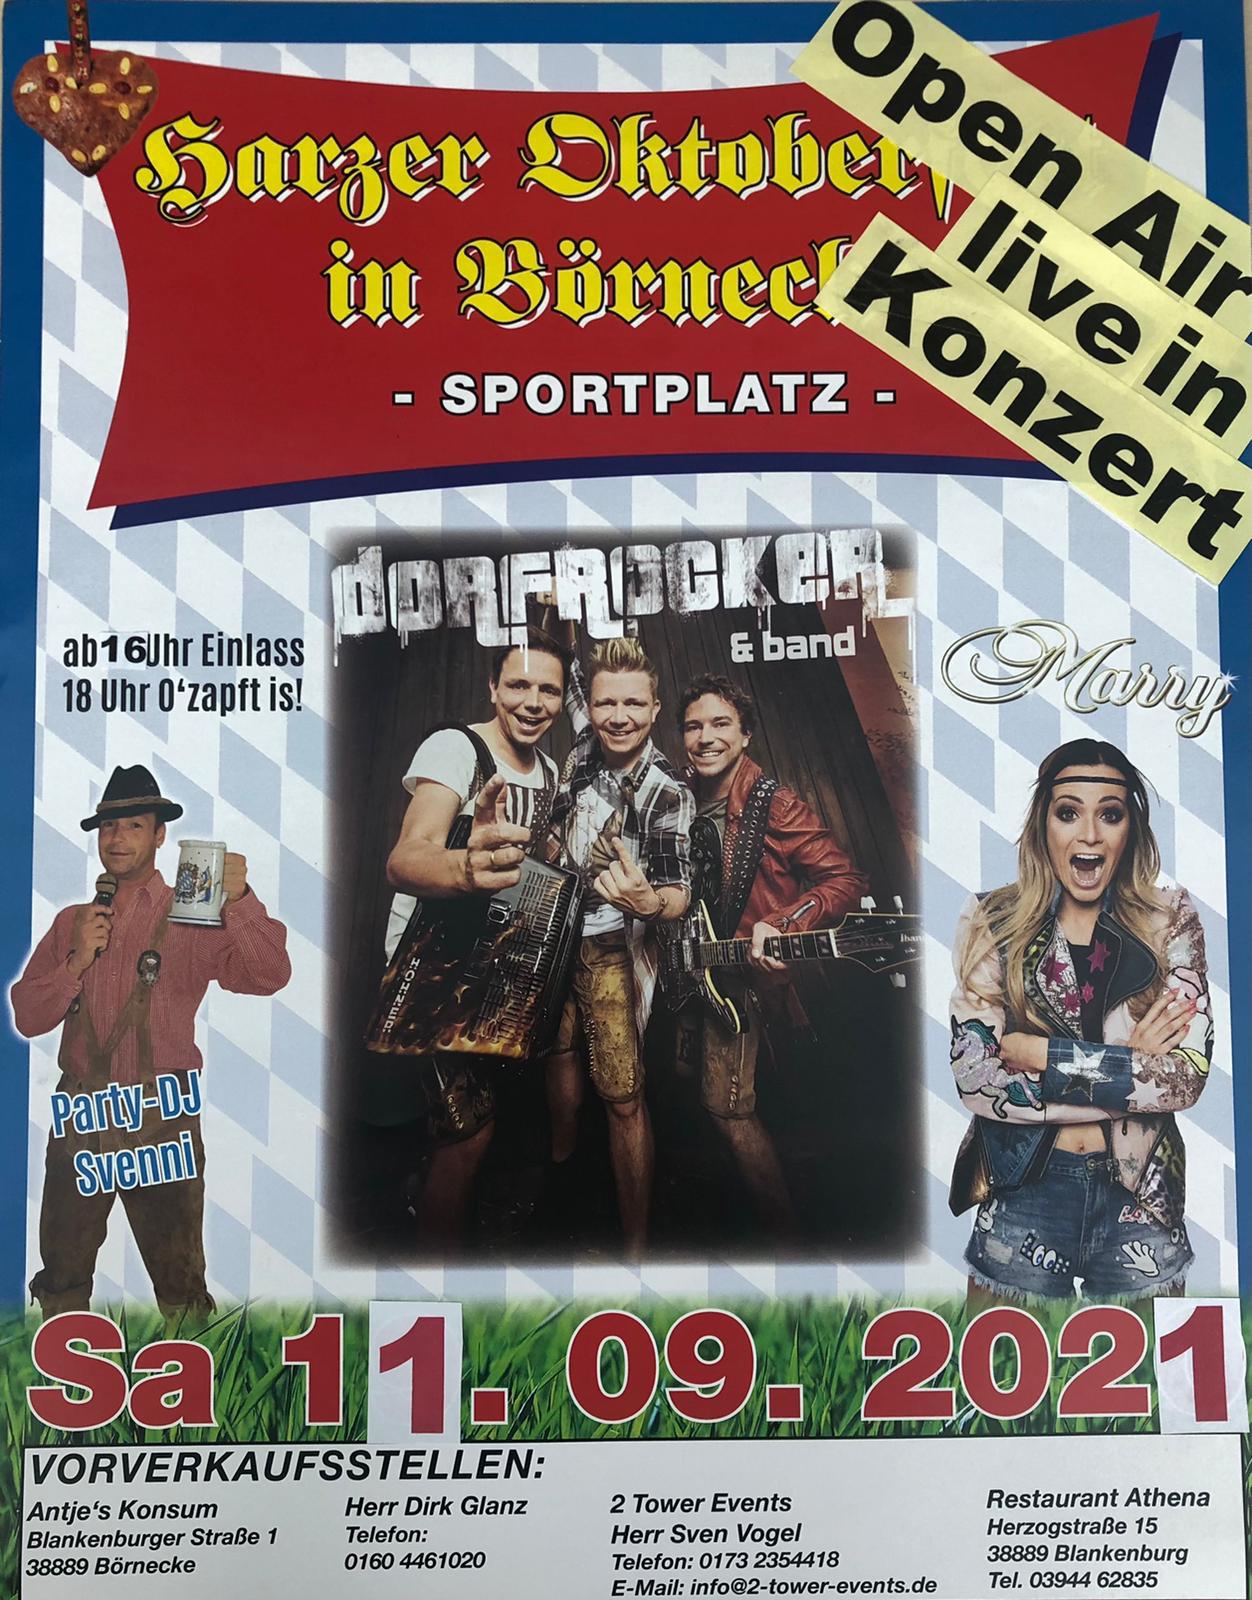 11.09.2021 - Harzer Oktoberfest Börnecke